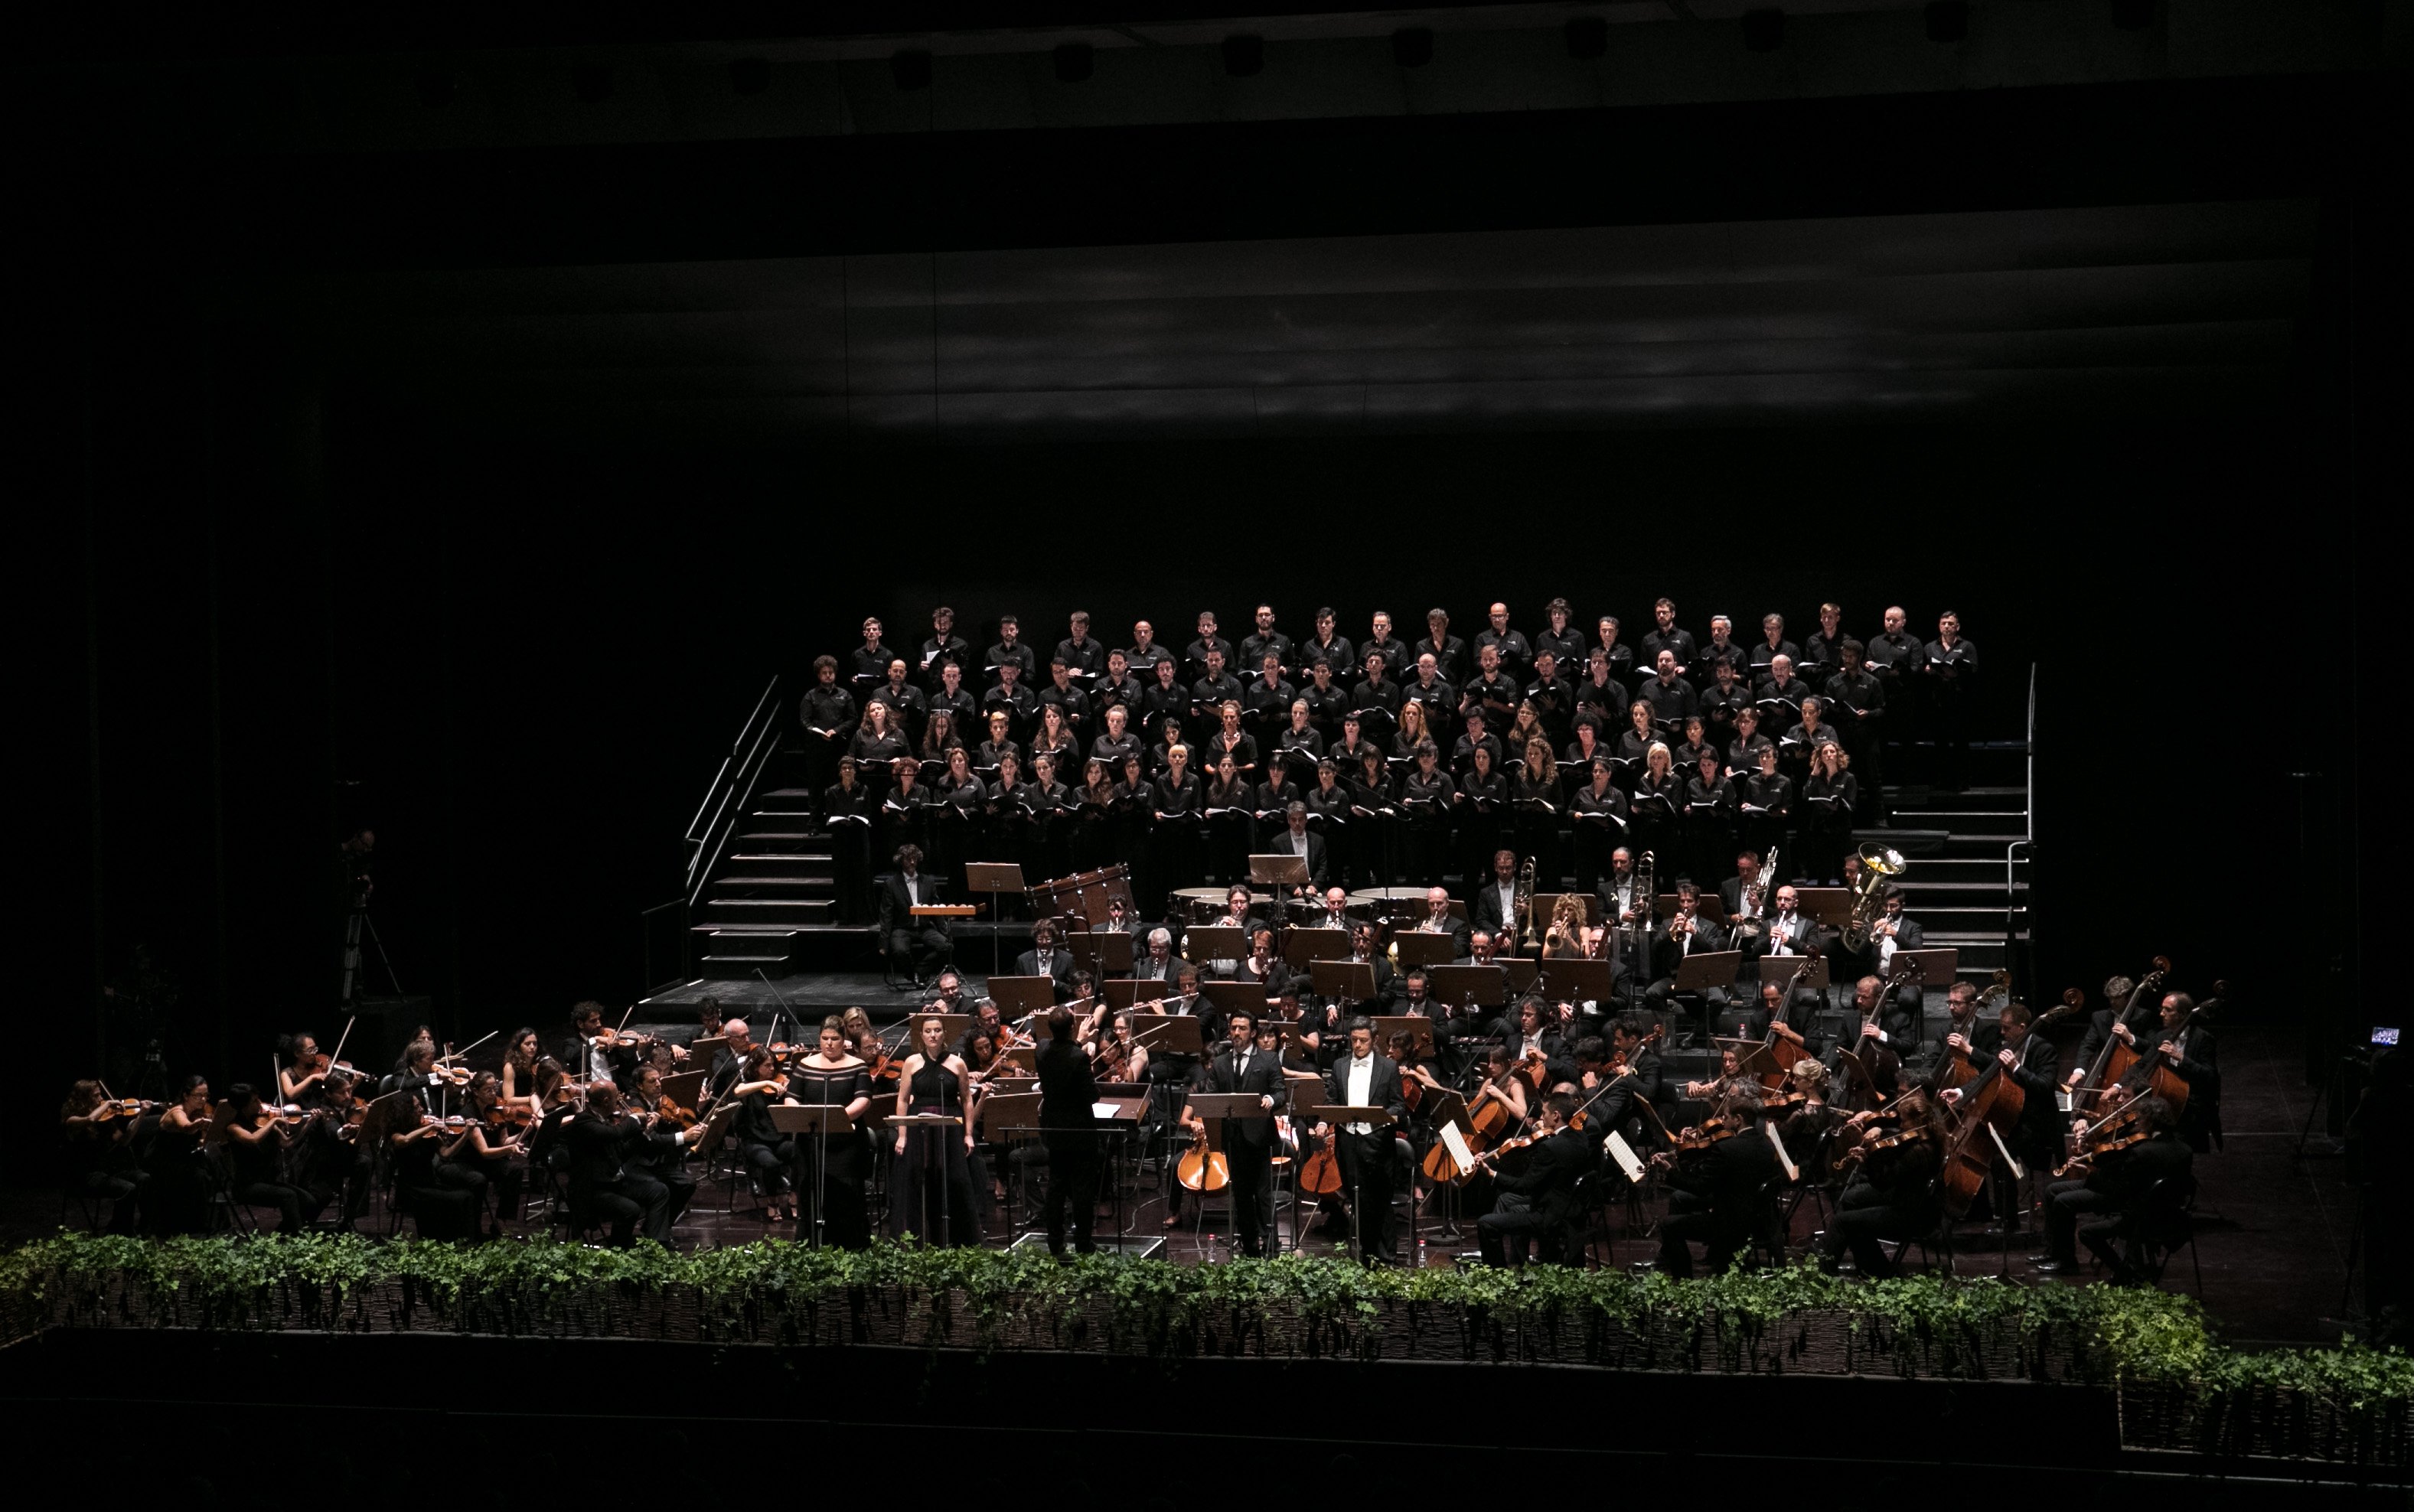 Polémica por prohibir el lazo amarillo en un concierto del Réquiem de Verdi